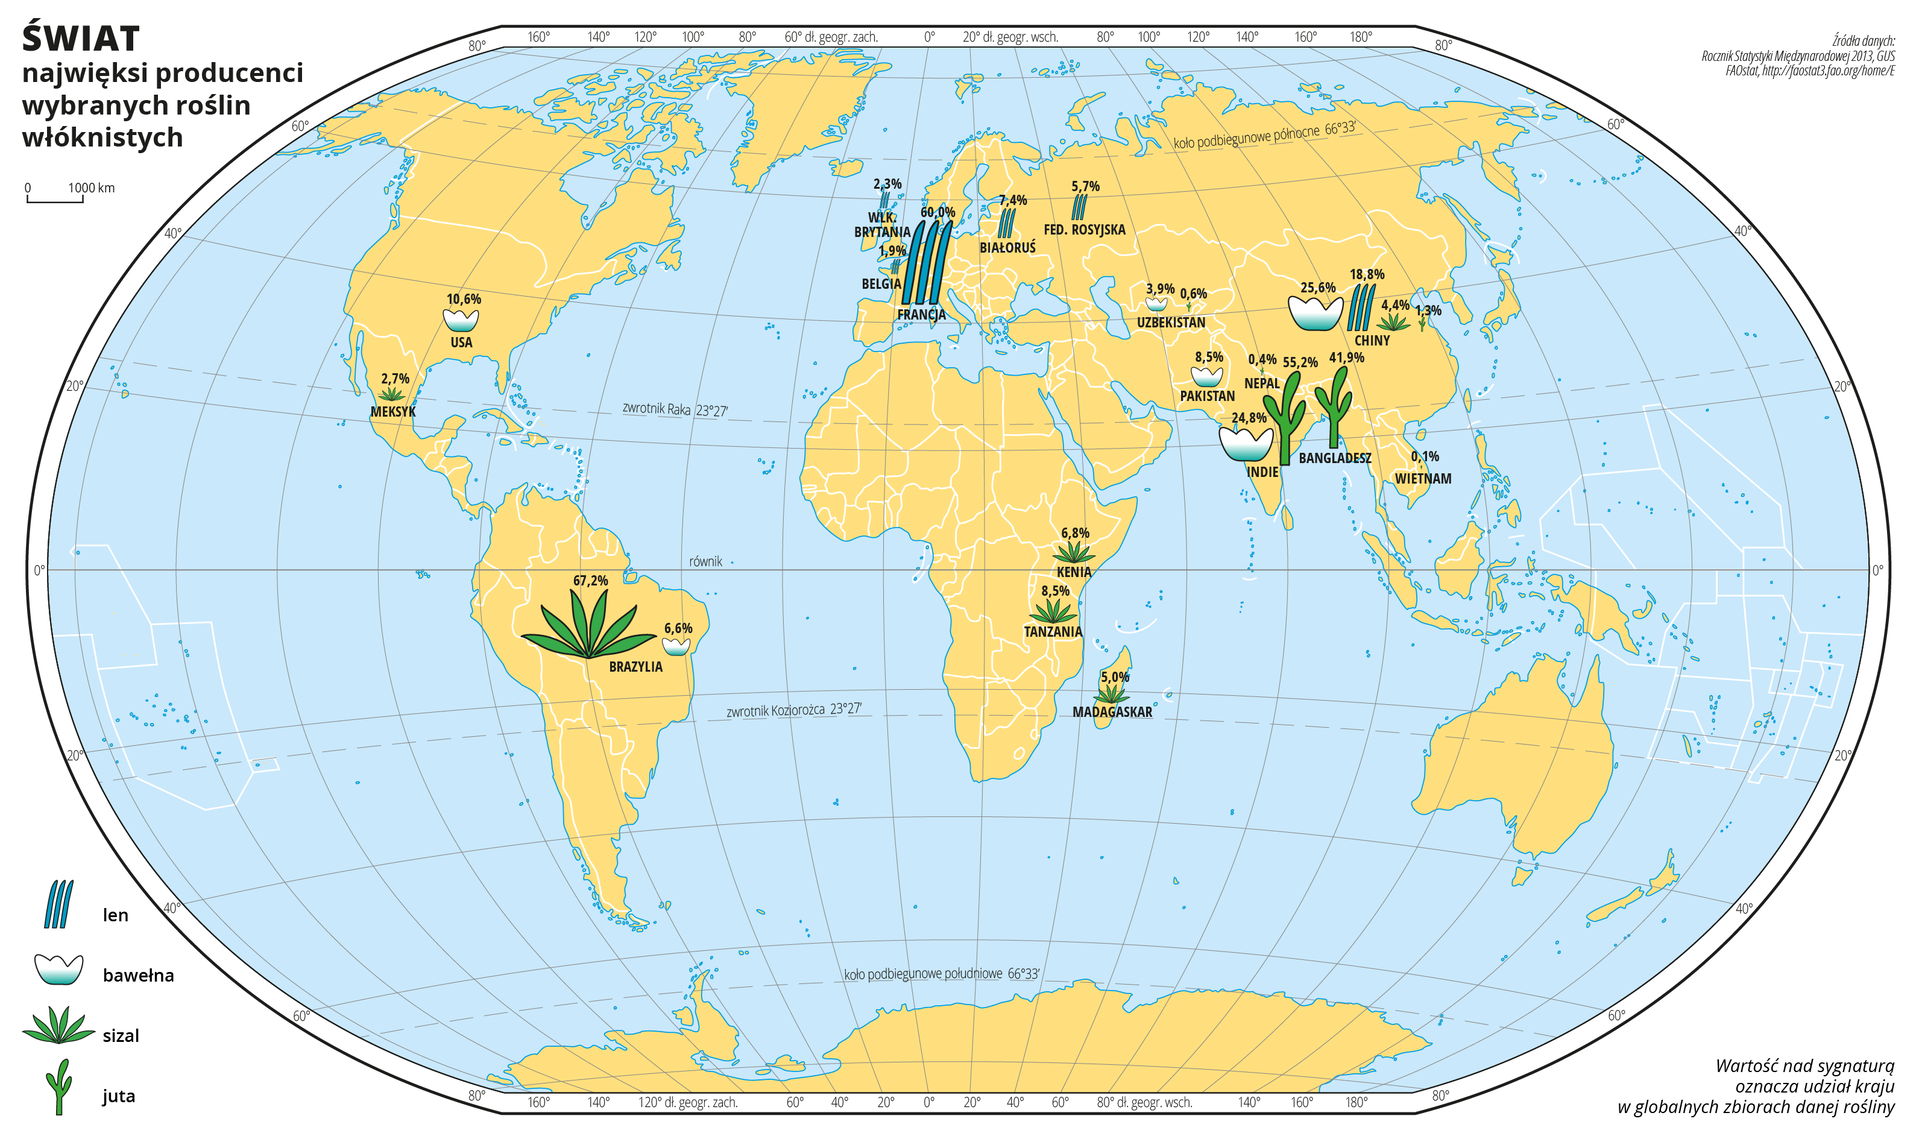 Ilustracja przedstawia mapę świata. Wody zaznaczono kolorem niebieskim. Na mapie za pomocą sygnatur zaznaczono największych producentów wybranych roślin włóknistych: lnu, bawełny, sizalu, juty. Nad sygnaturami zapisano liczbę oznaczającą udział kraju w globalnych zbiorach danej używki.Sygnatury znajdują się na obszarach położonych w Brazylii, wschodniej Afryce i na Madagaskarze, w Europie i południowej Azji. Najwięcej sizalu produkuje się w Brazylii, najwięcej lnu we Francji, najwięcej juty w Indiach, a najwięcej bawełny w Chinach.Mapa pokryta jest równoleżnikami i południkami. Dookoła mapy w białej ramce opisano współrzędne geograficzne co dwadzieścia stopni.Po lewej stronie mapy opisano znaki użyte na mapie.